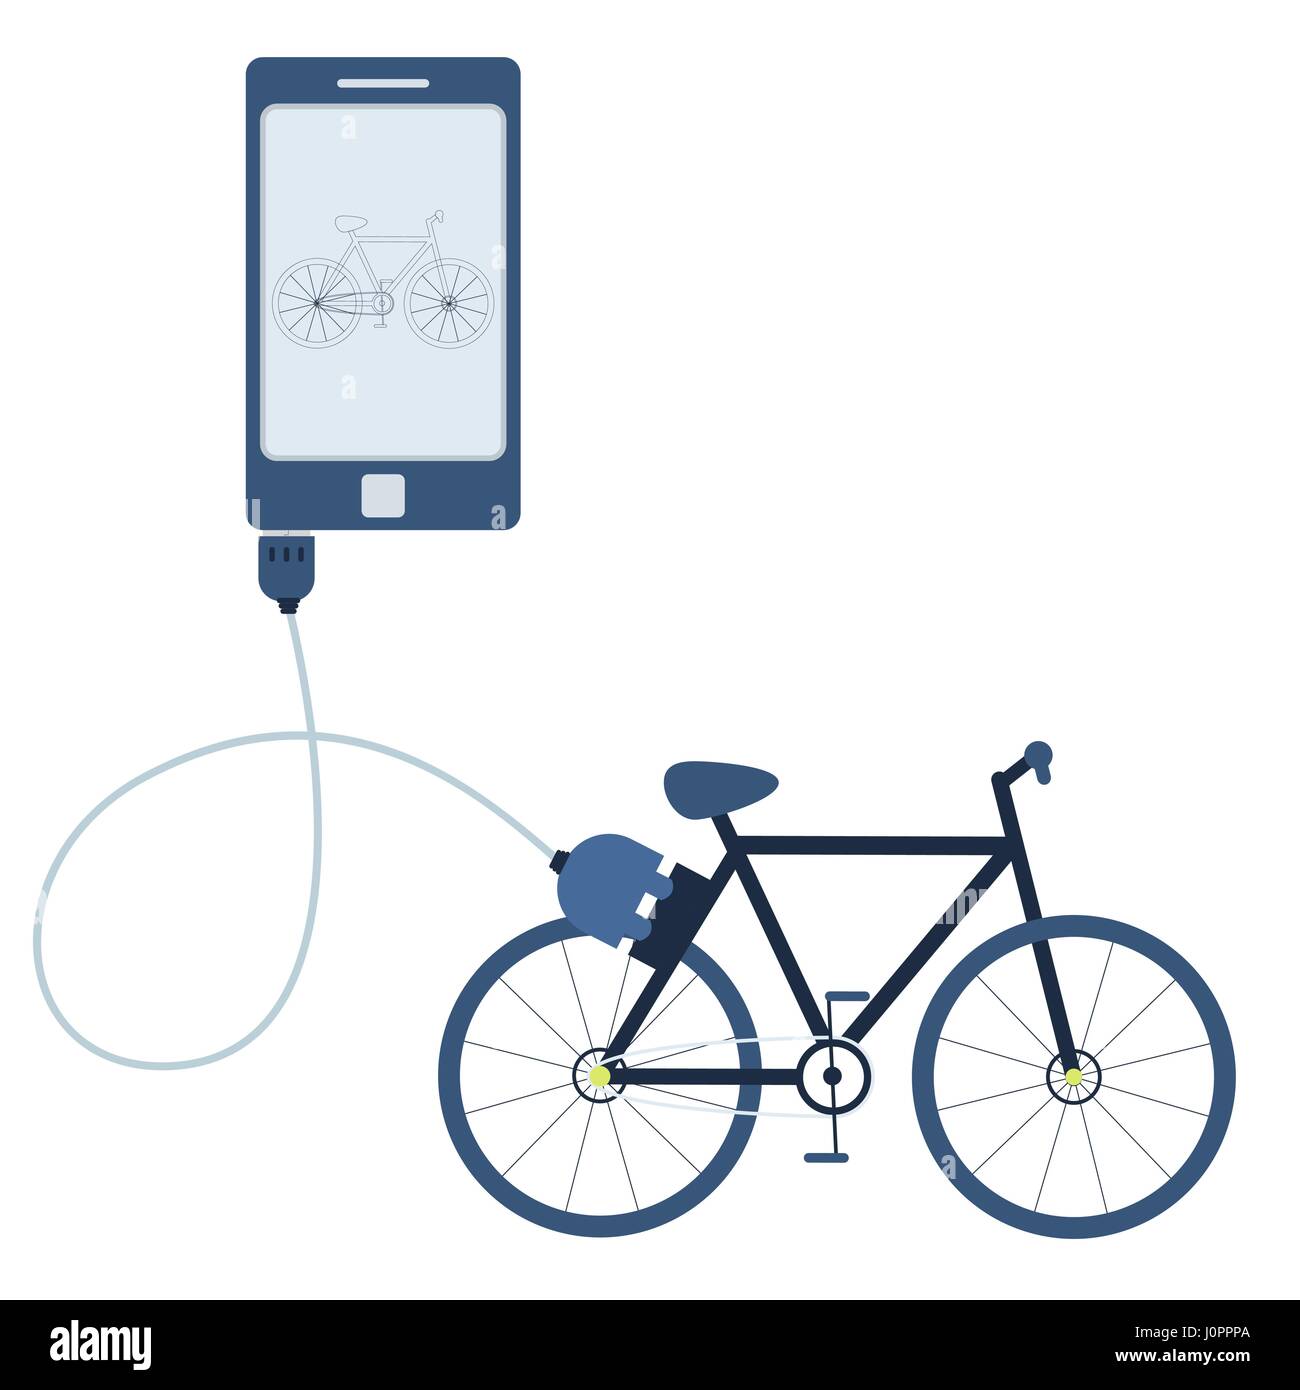 Fahrrad an ein Handy über ein USB-Kabel angeschlossen. Überblick über das Auto auf dem mobilen Monitor angezeigt wird. Flaches Design. Isoliert. Stock Vektor